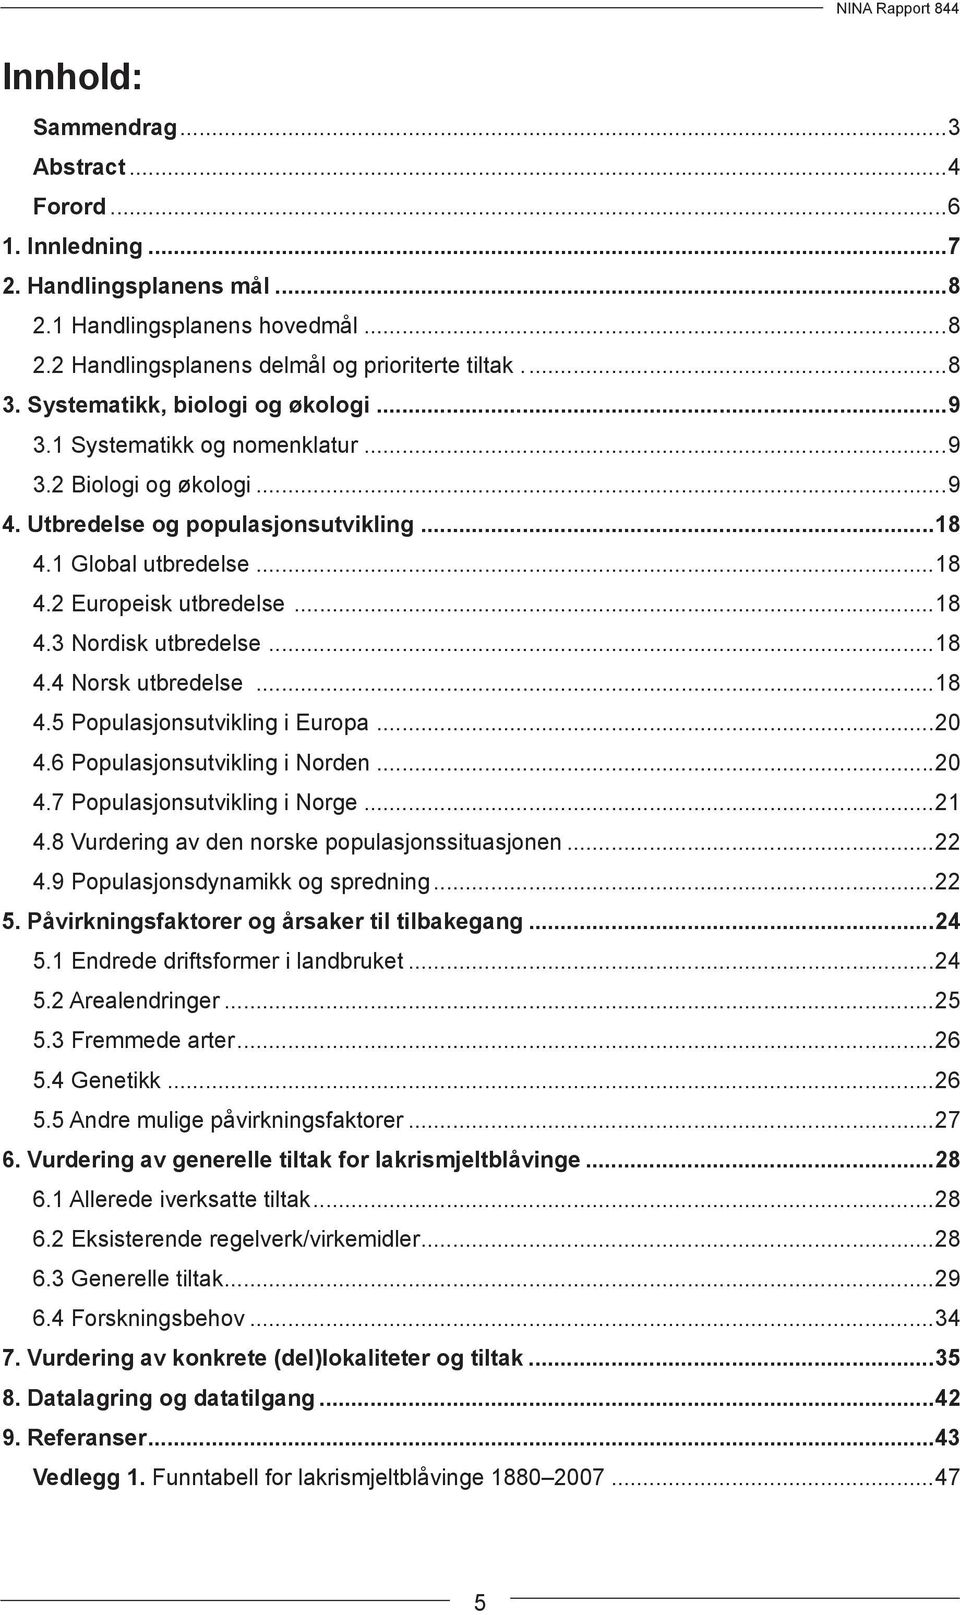 ..18 4.4 Norsk utbredelse...18 4.5 Populasjonsutvikling i Europa...20 4.6 Populasjonsutvikling i Norden...20 4.7 Populasjonsutvikling i Norge...21 4.8 Vurdering av den norske populasjonssituasjonen.